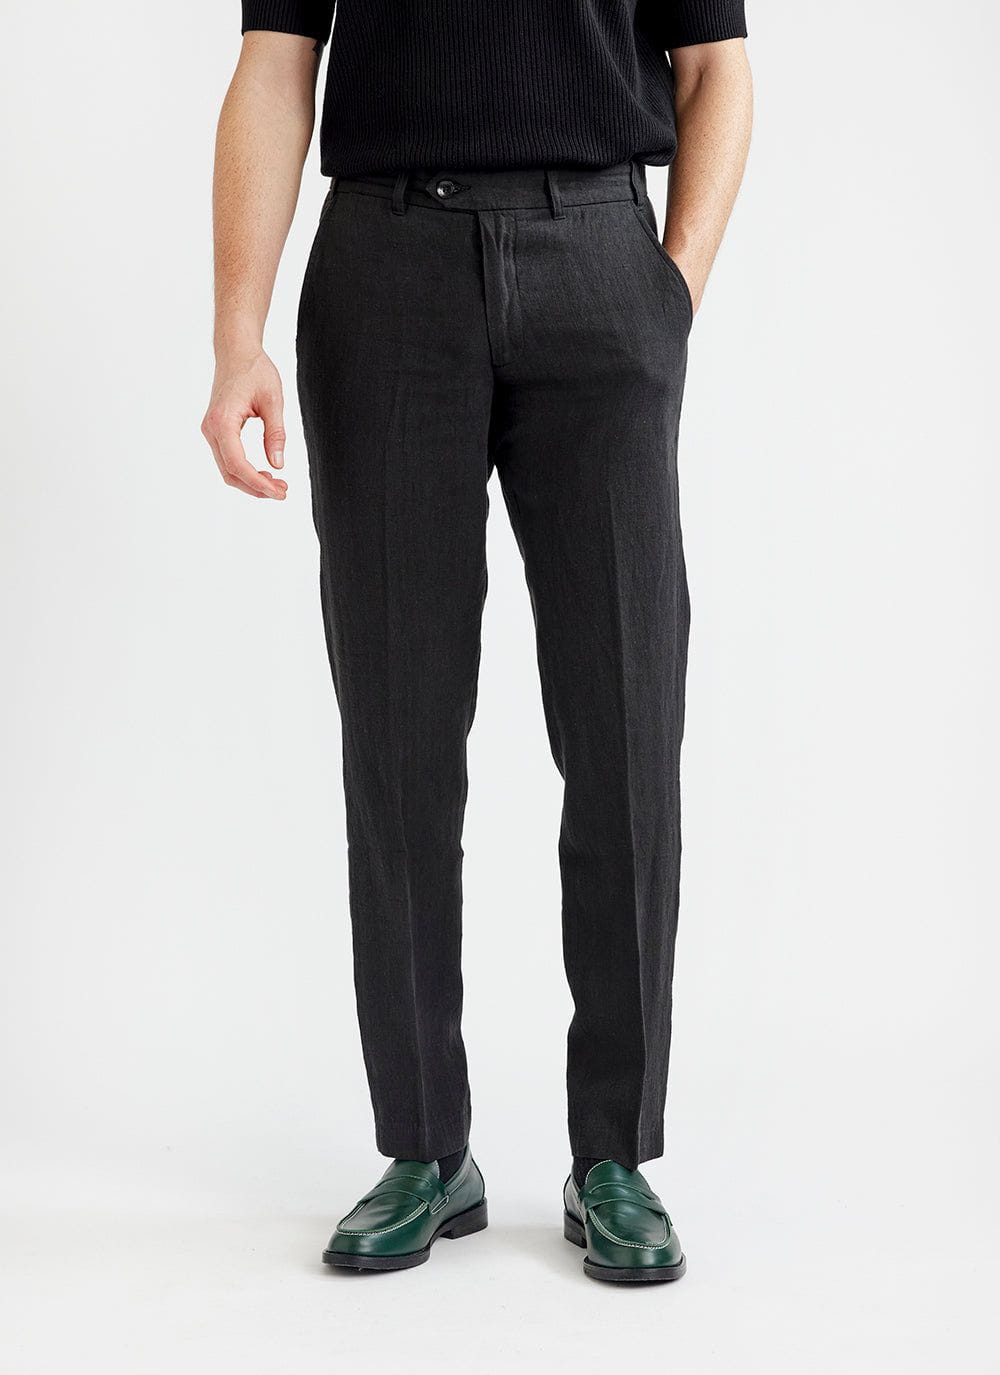 Buy HIGHLANDER Black Striped Slim Fit Regular Trousers for Men Online at  Rs.560 - Ketch